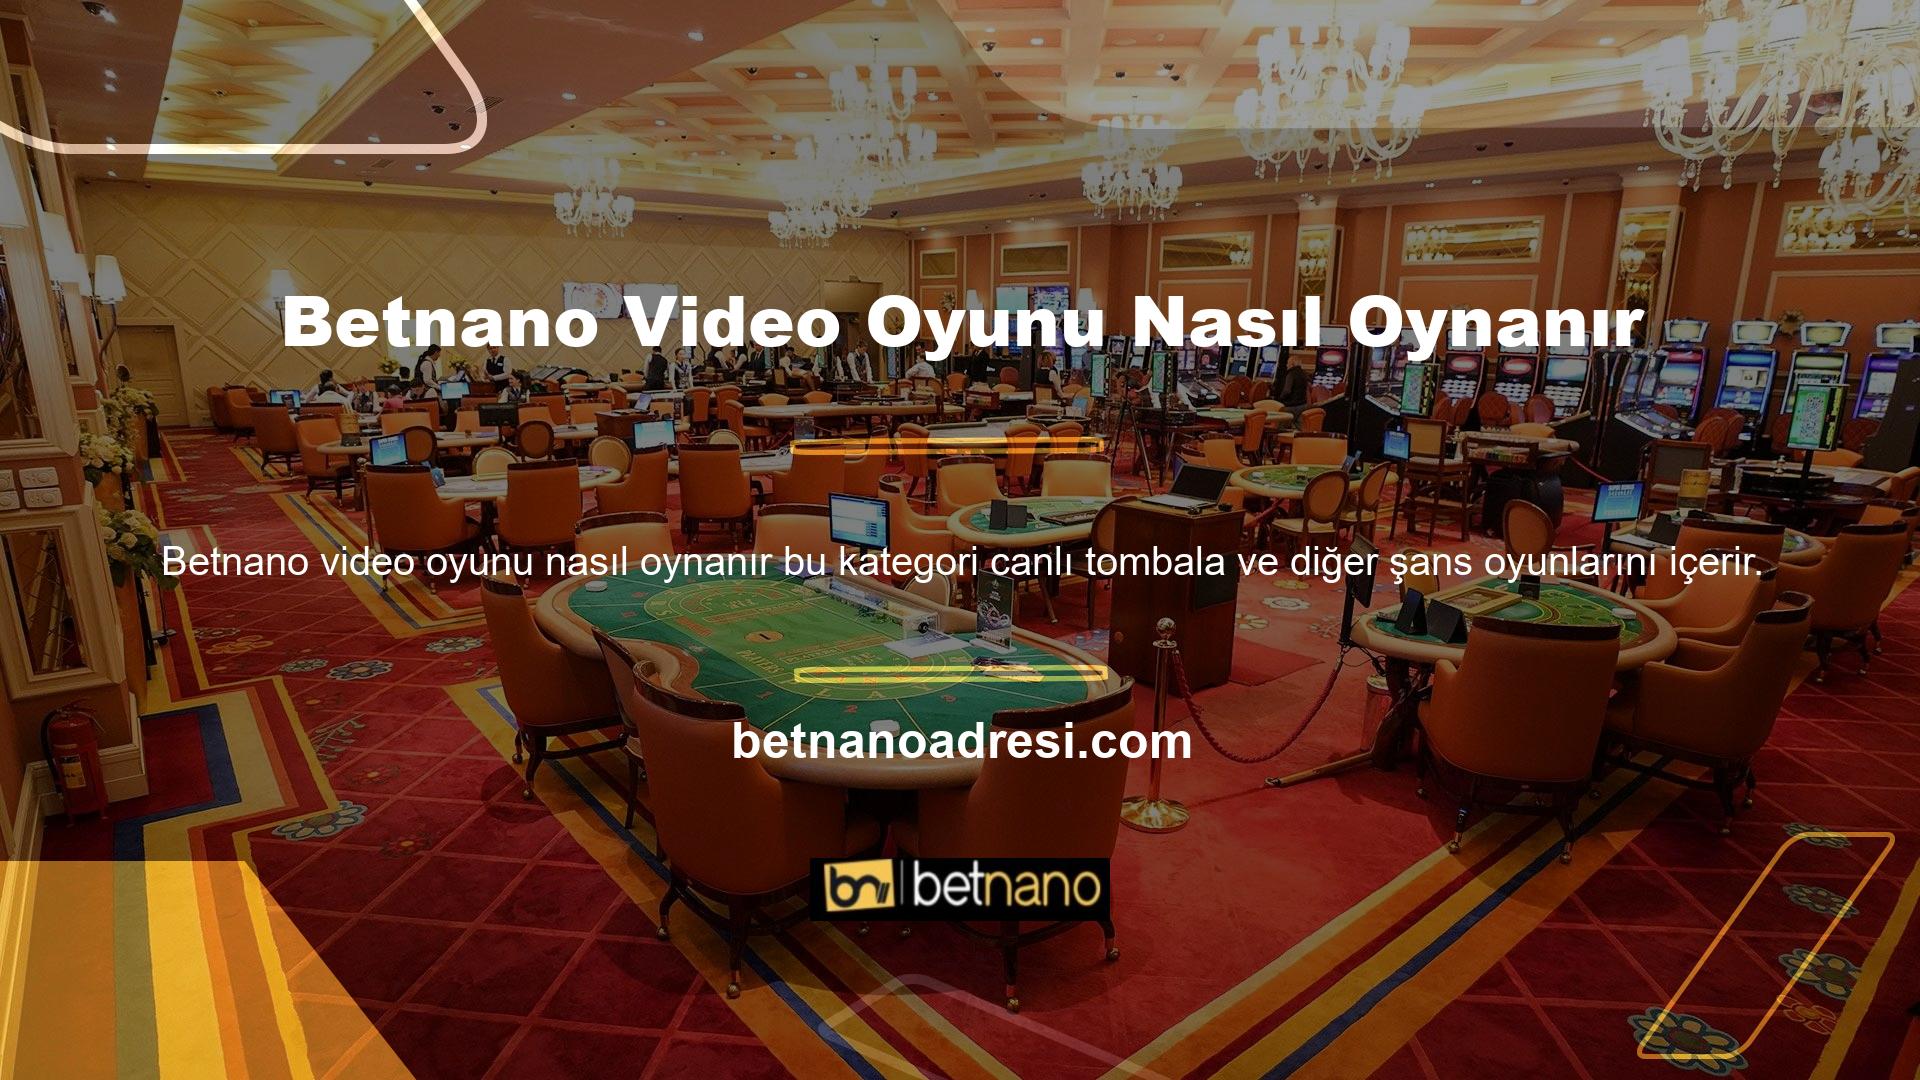 Ayrıca kullanıcı incelemelerini takip edebilir ve Betnano TV oyun güvenlik sorularına olumlu yanıtlar alabilirsiniz